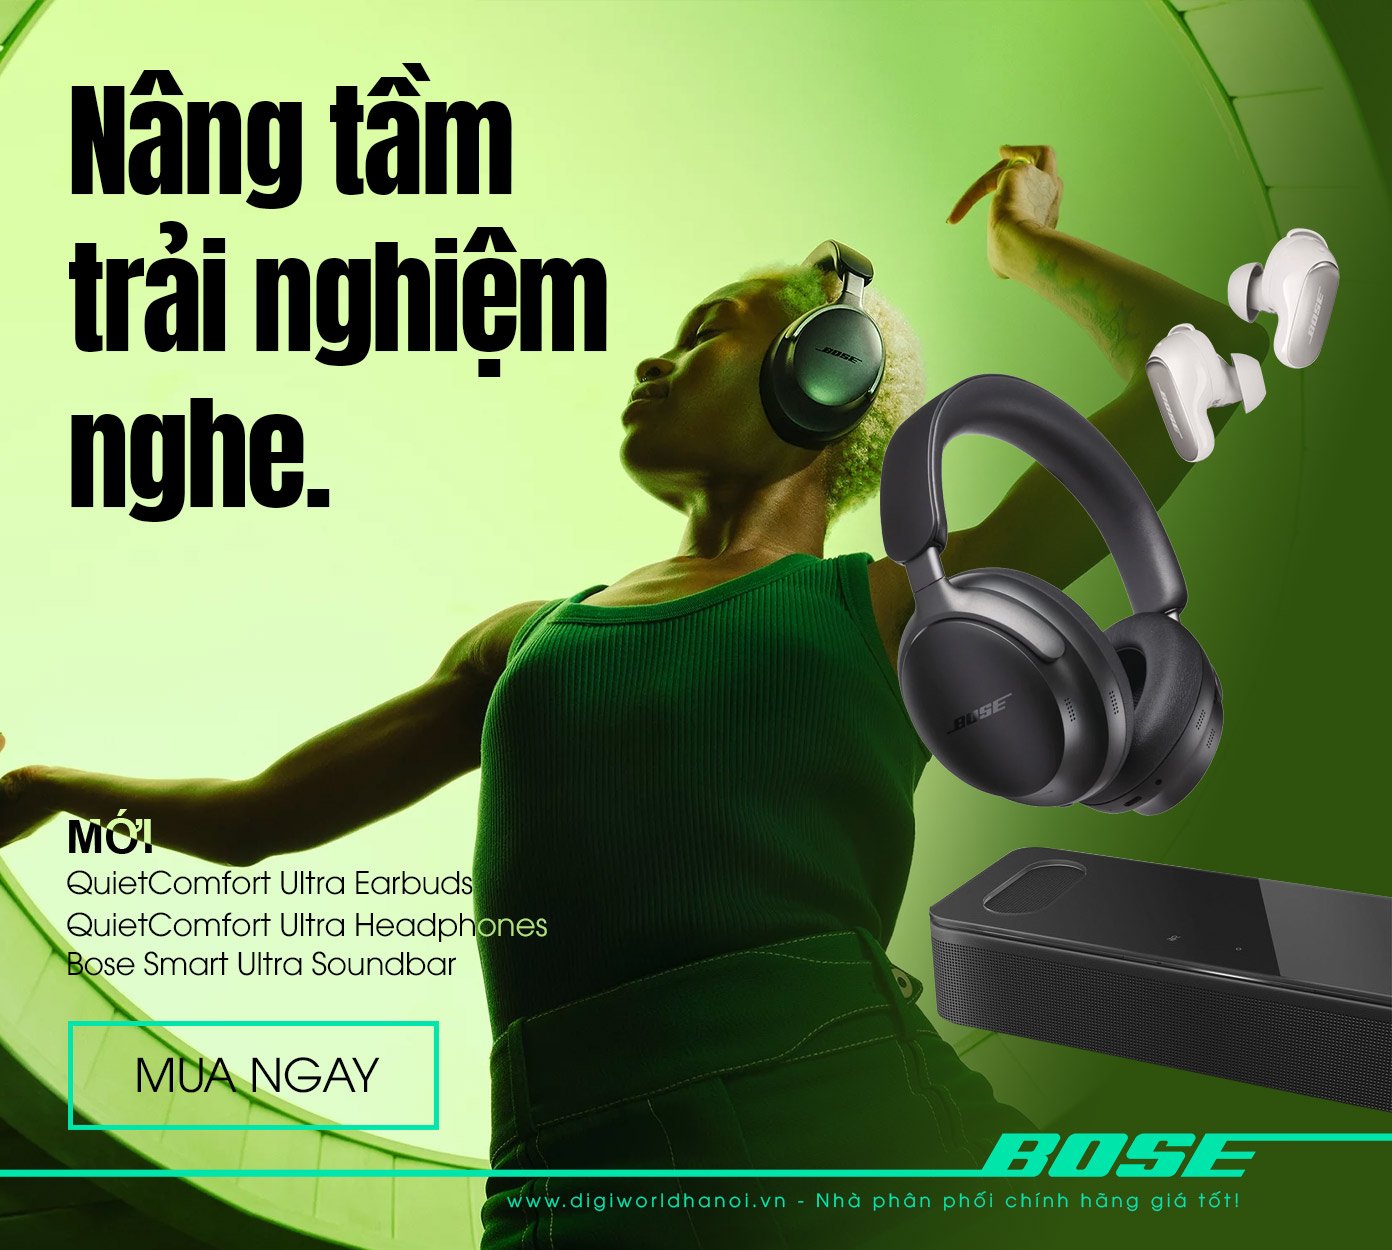 Tai nghe Bose QuietComfort Ultra Headphones, Bose QuietComfort Ultra Earbuds, Loa Bose Smart Ultra Soundbar đã có hàng tại Digiworld Hà Nội với mức giá cực tốt!